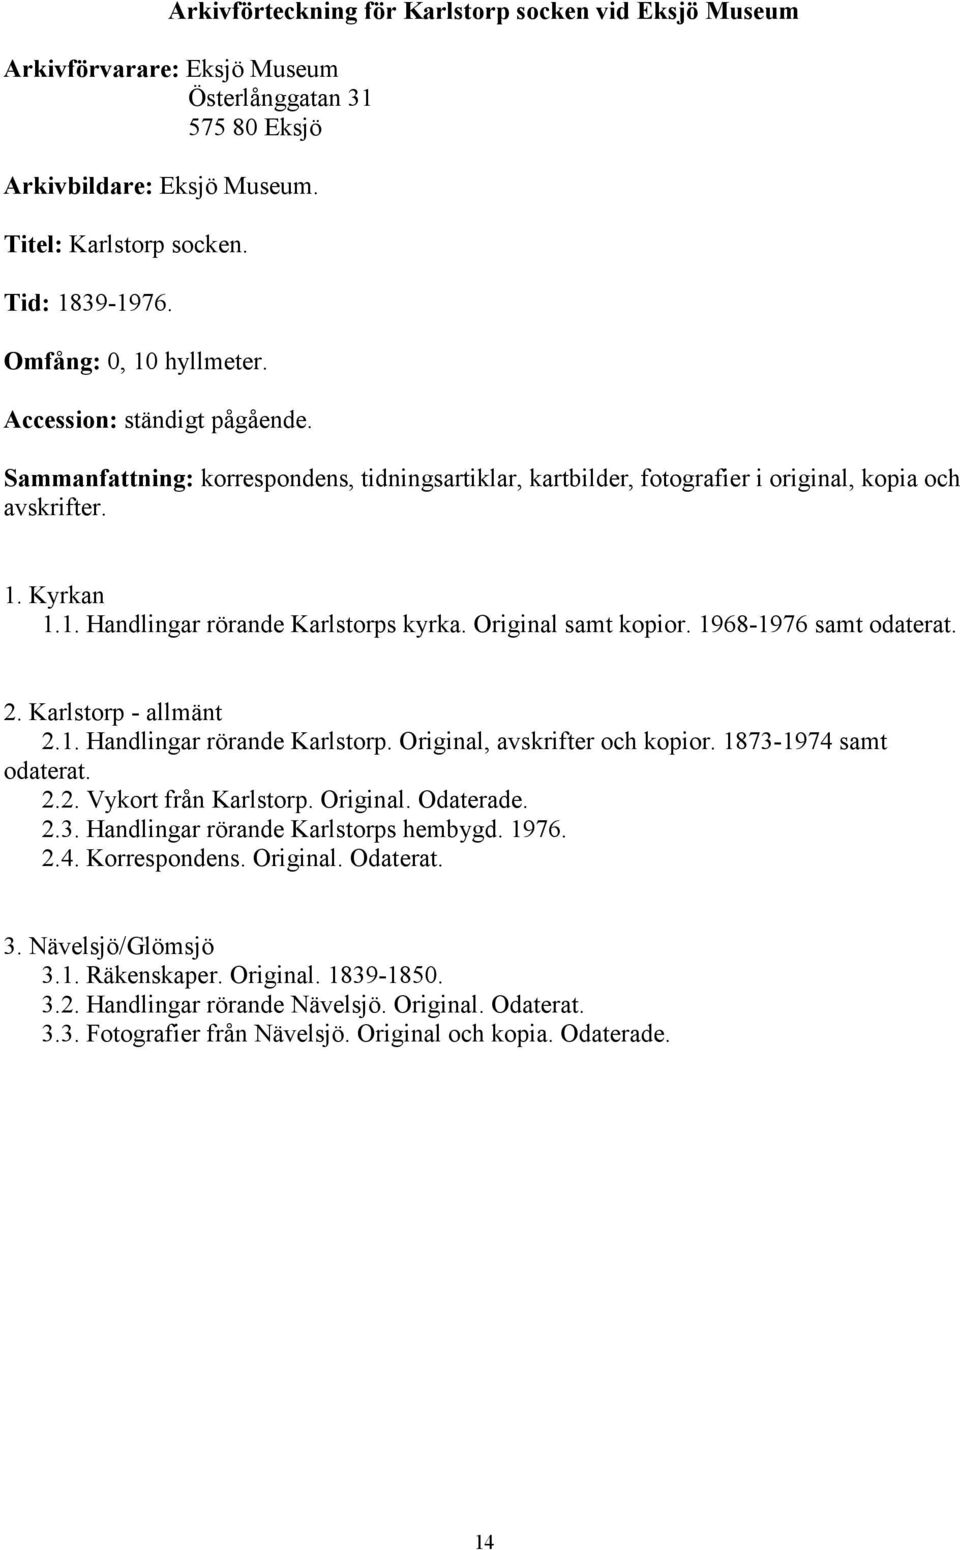 Original samt kopior. 1968-1976 samt odaterat. 2. Karlstorp - allmänt 2.1. Handlingar rörande Karlstorp. Original, avskrifter och kopior. 1873-1974 samt odaterat. 2.2. Vykort från Karlstorp. Original. Odaterade.